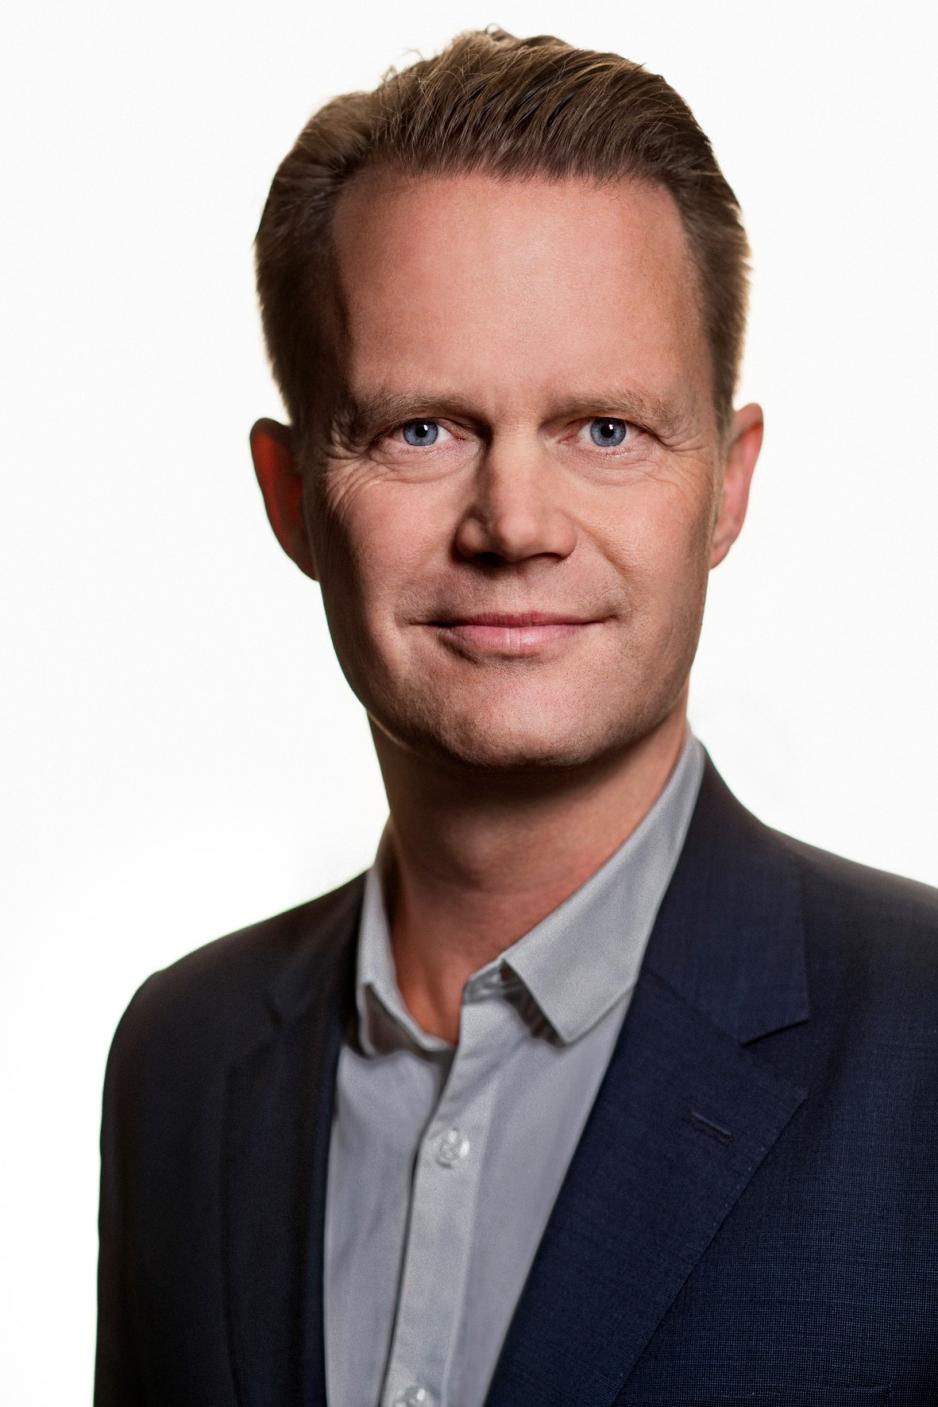 Danmarks utenriksminister, Jeppe Kofod.